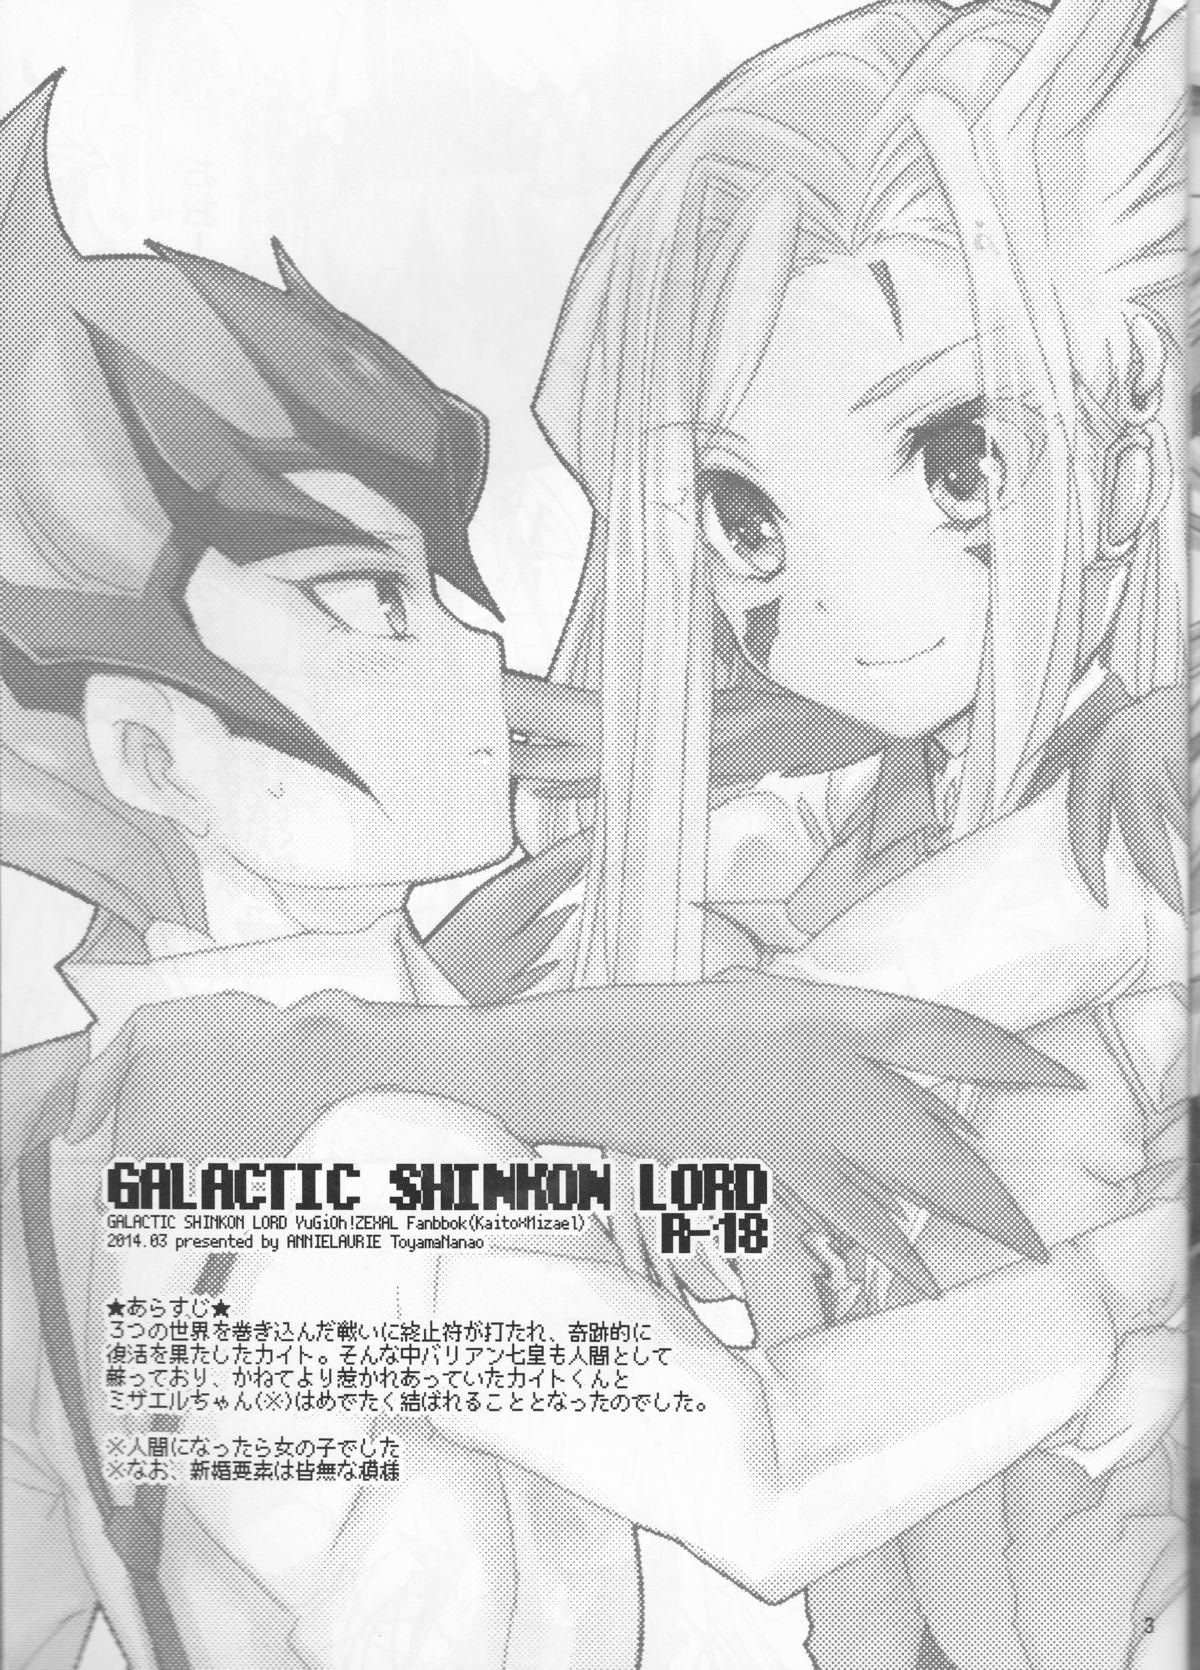 Grandpa GALACTIC SHINKON LORD - Yu-gi-oh zexal 8teen - Page 4